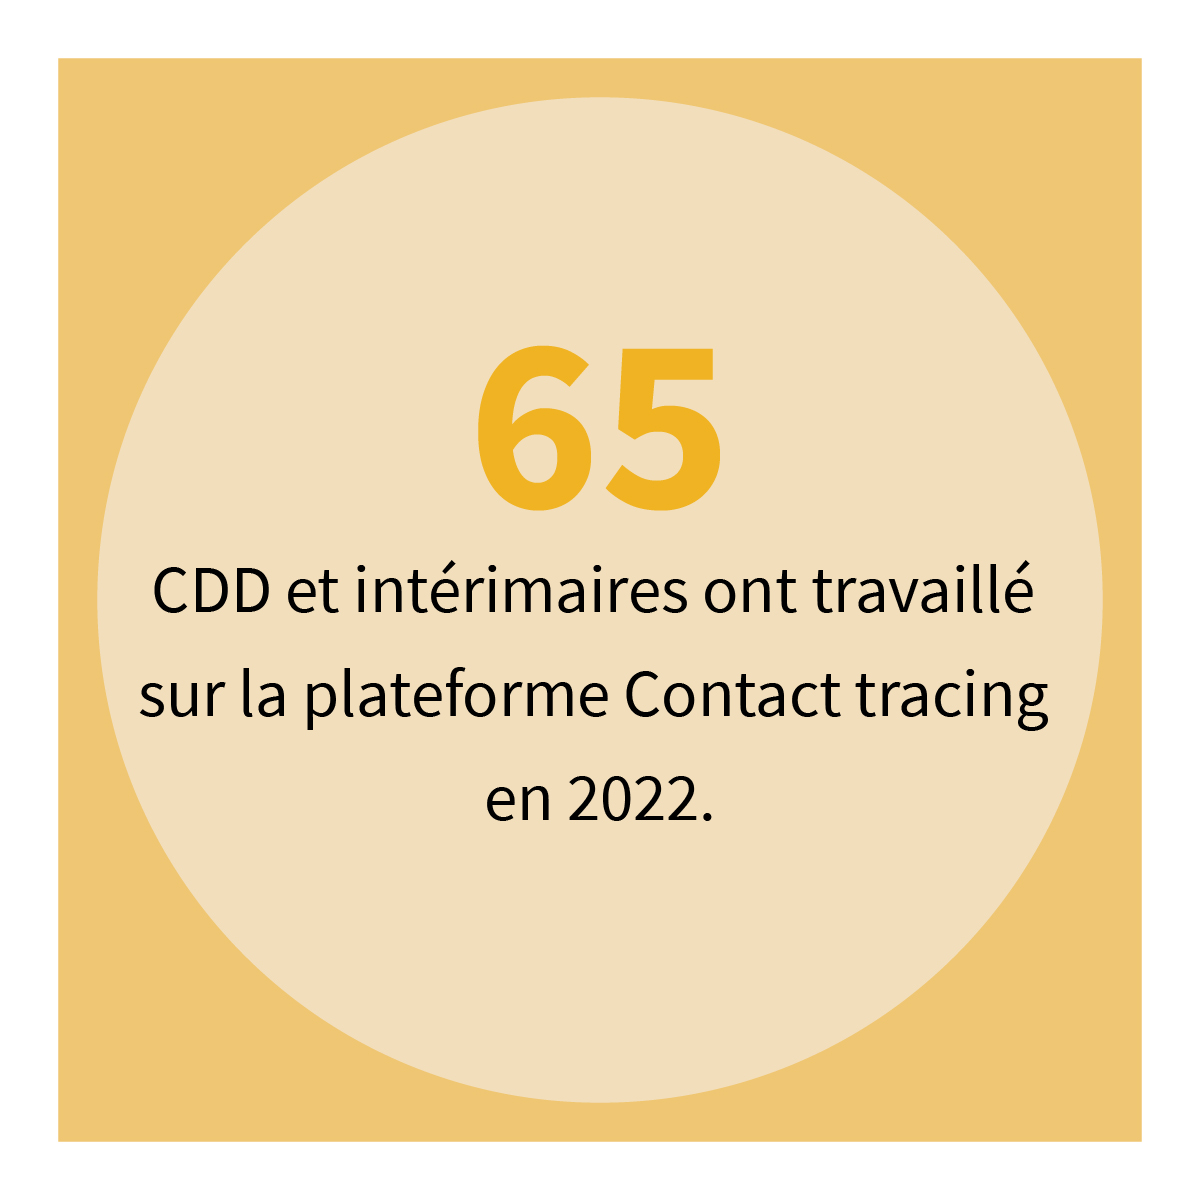 65 CDD et intérimaires ont travaillé sur la plateforme Contact tracing en 2022.